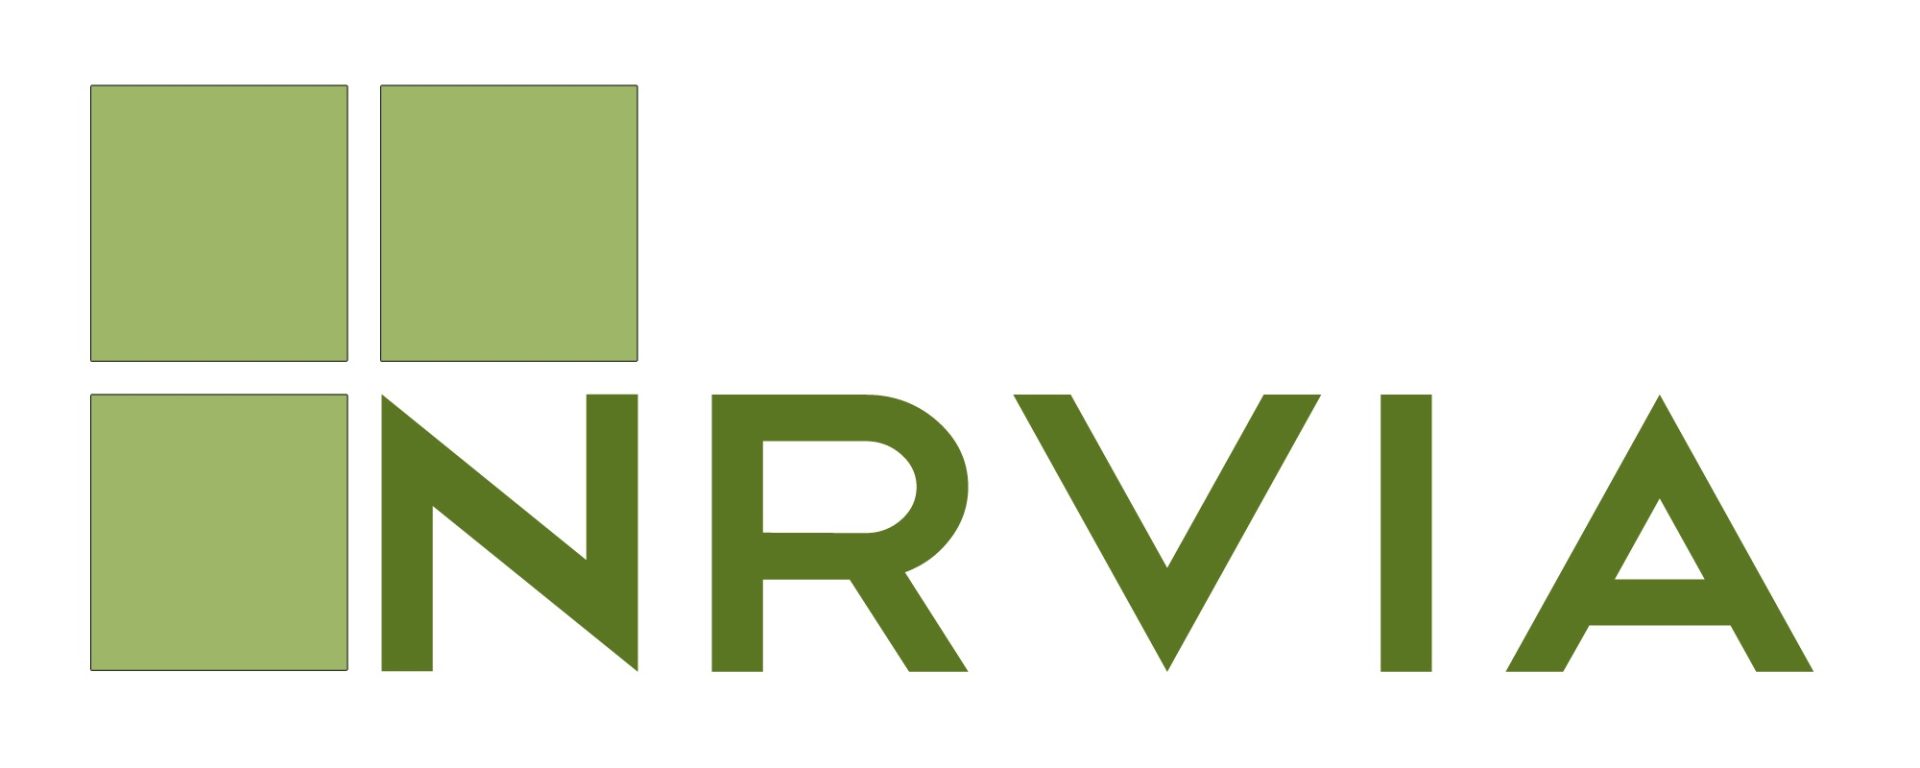 National RV Inspectors Association NRVIA logo